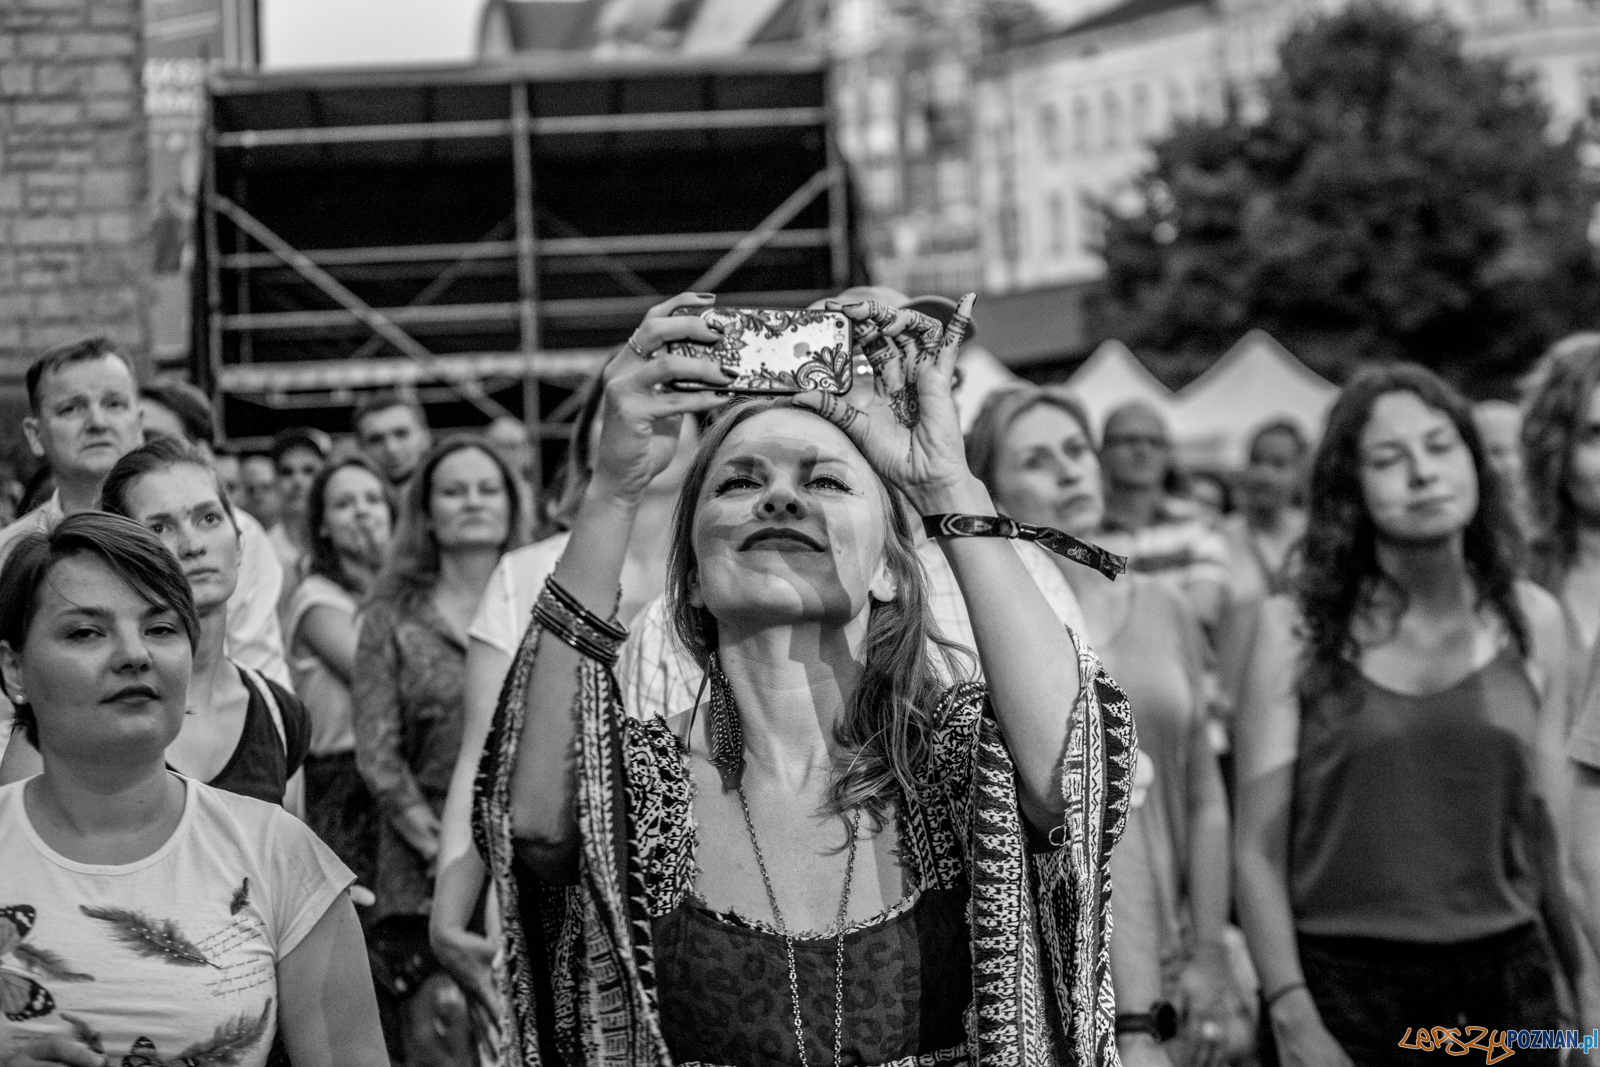 Ethno Port Festiwal 2019  Foto: lepszyPOZNAN.pl / Ewelina Jaśkowiak